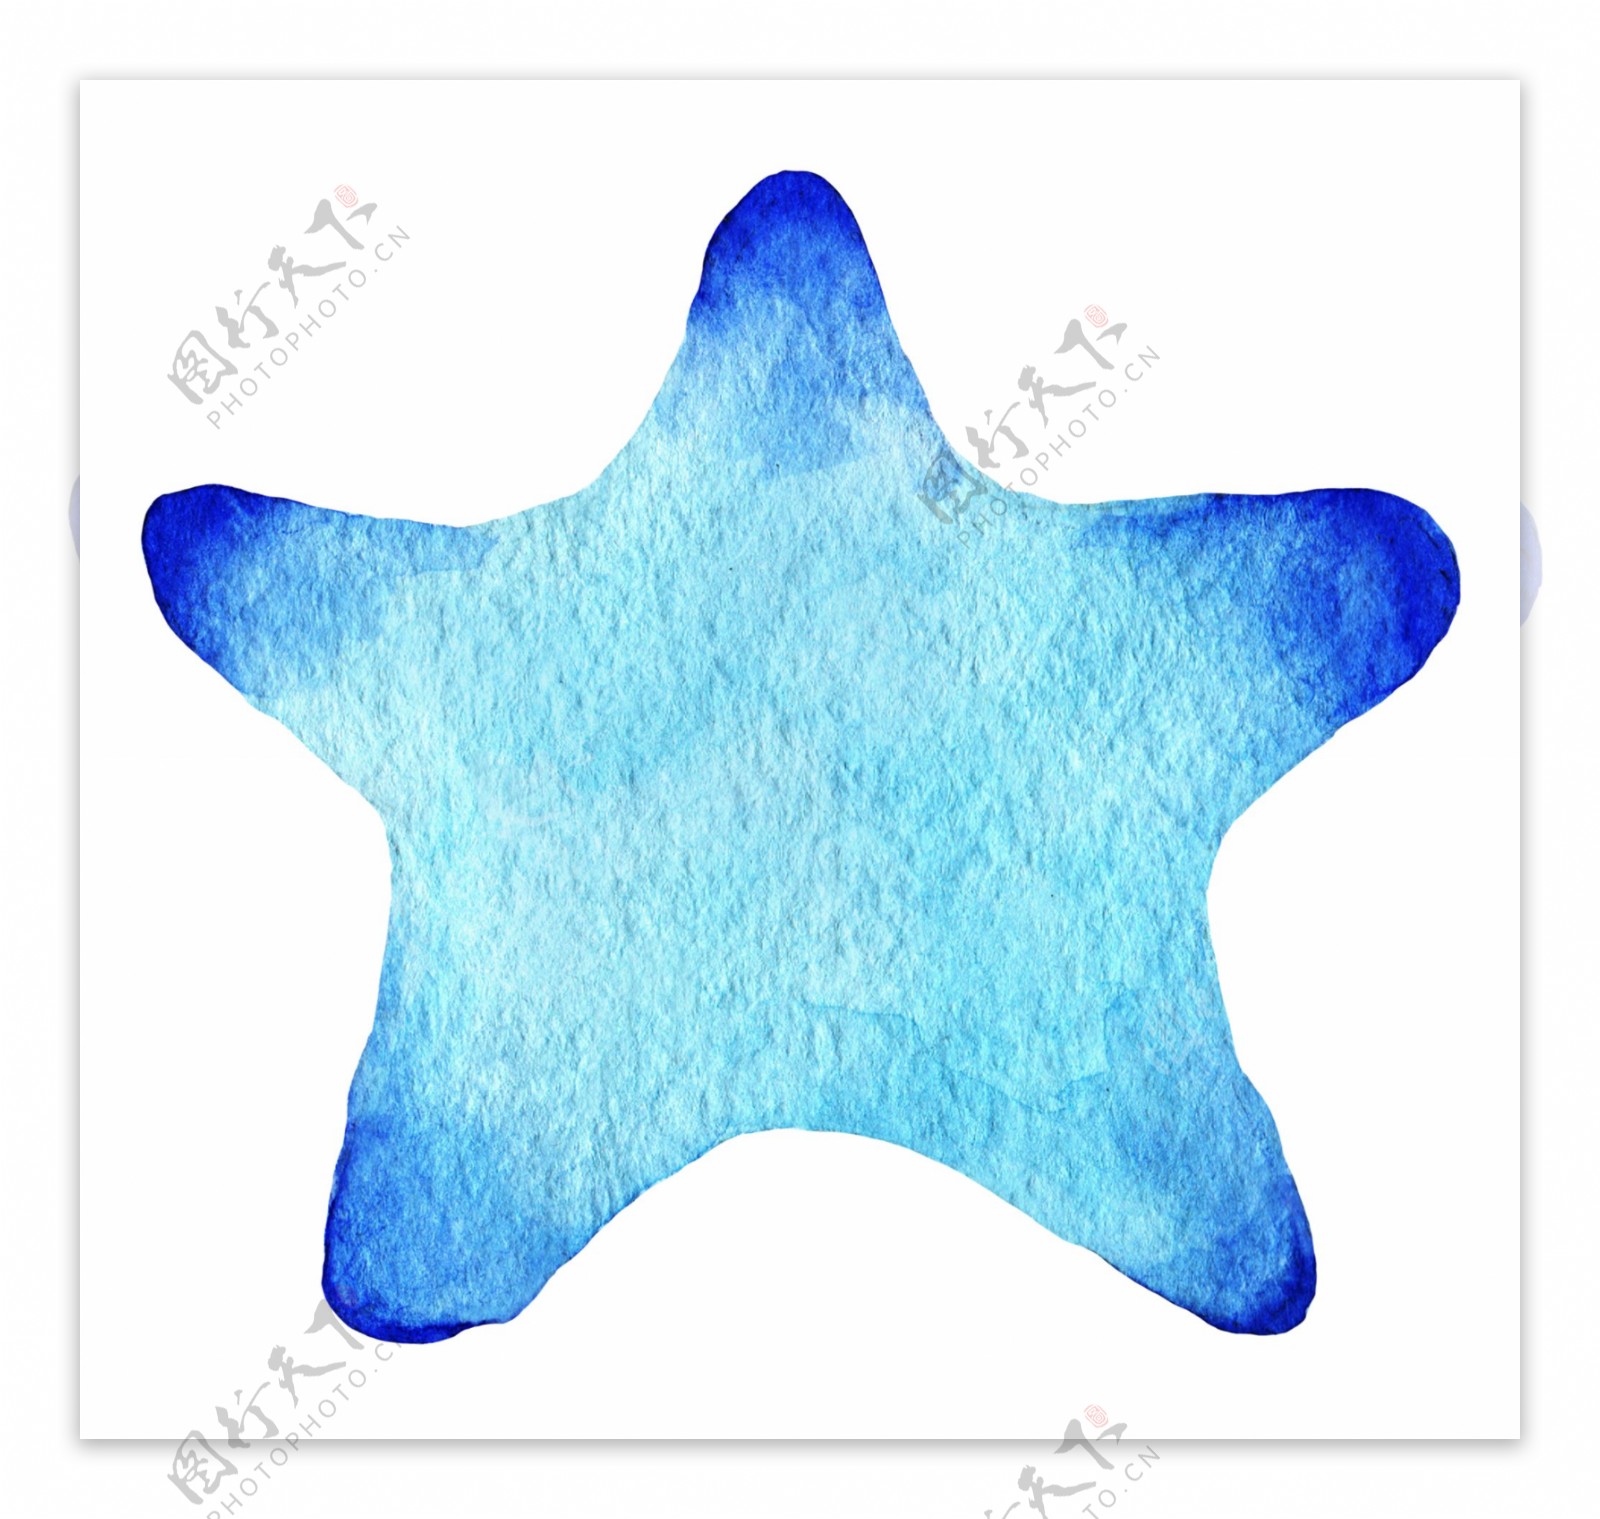 可爱蓝色小星星图片素材